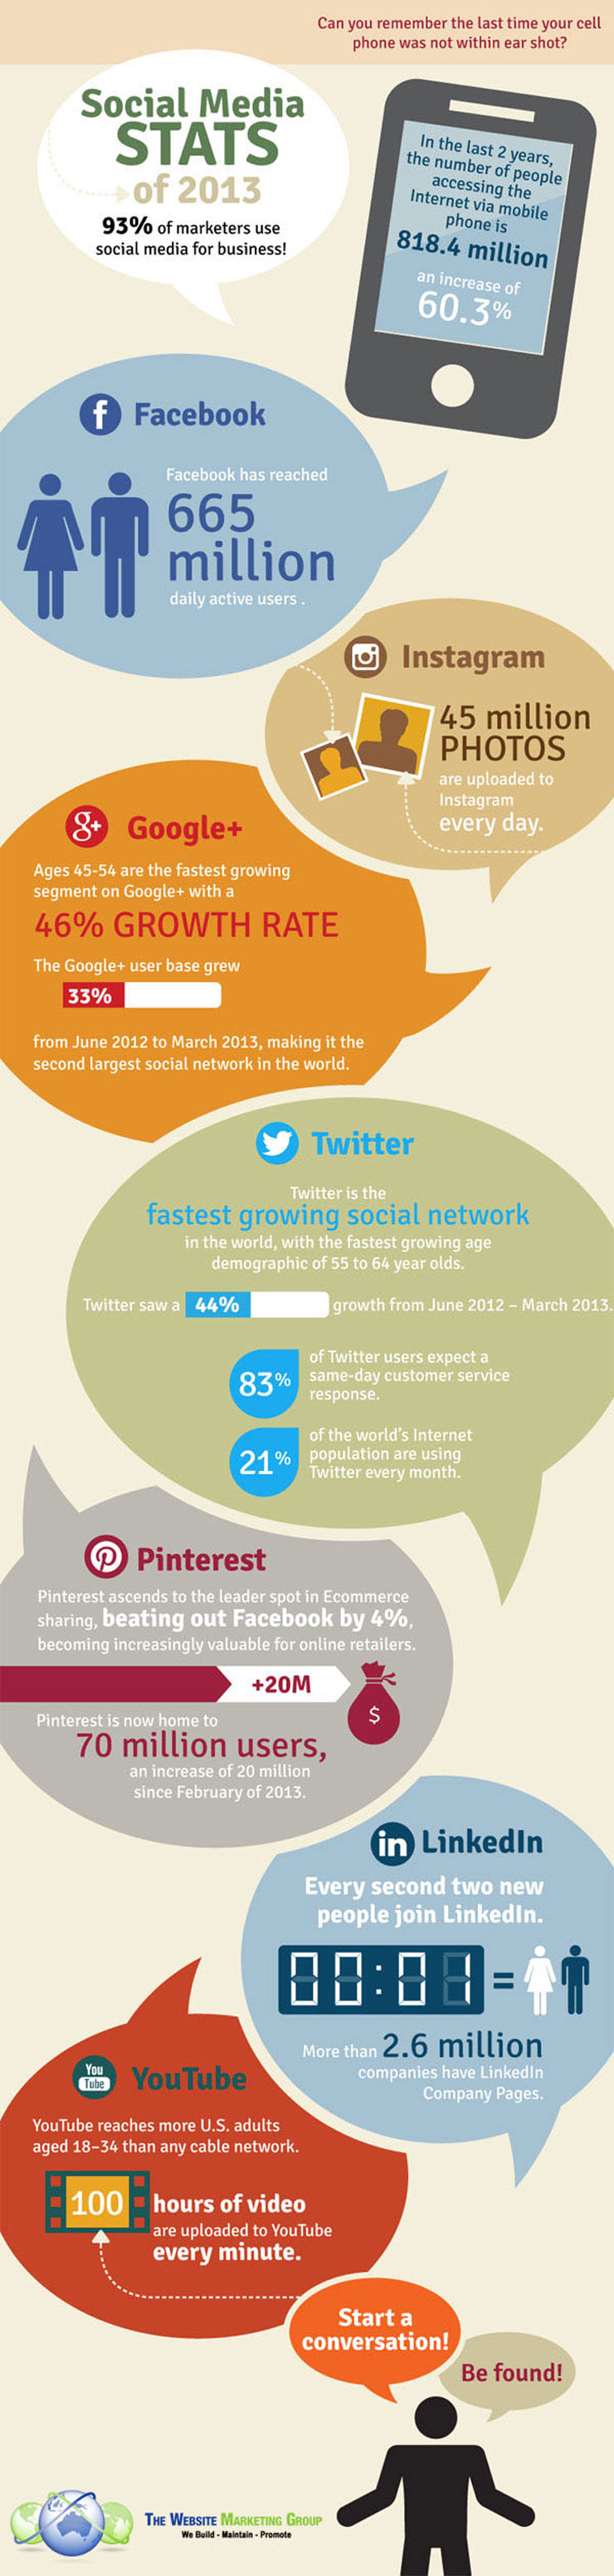 Social Media Statistics 2013